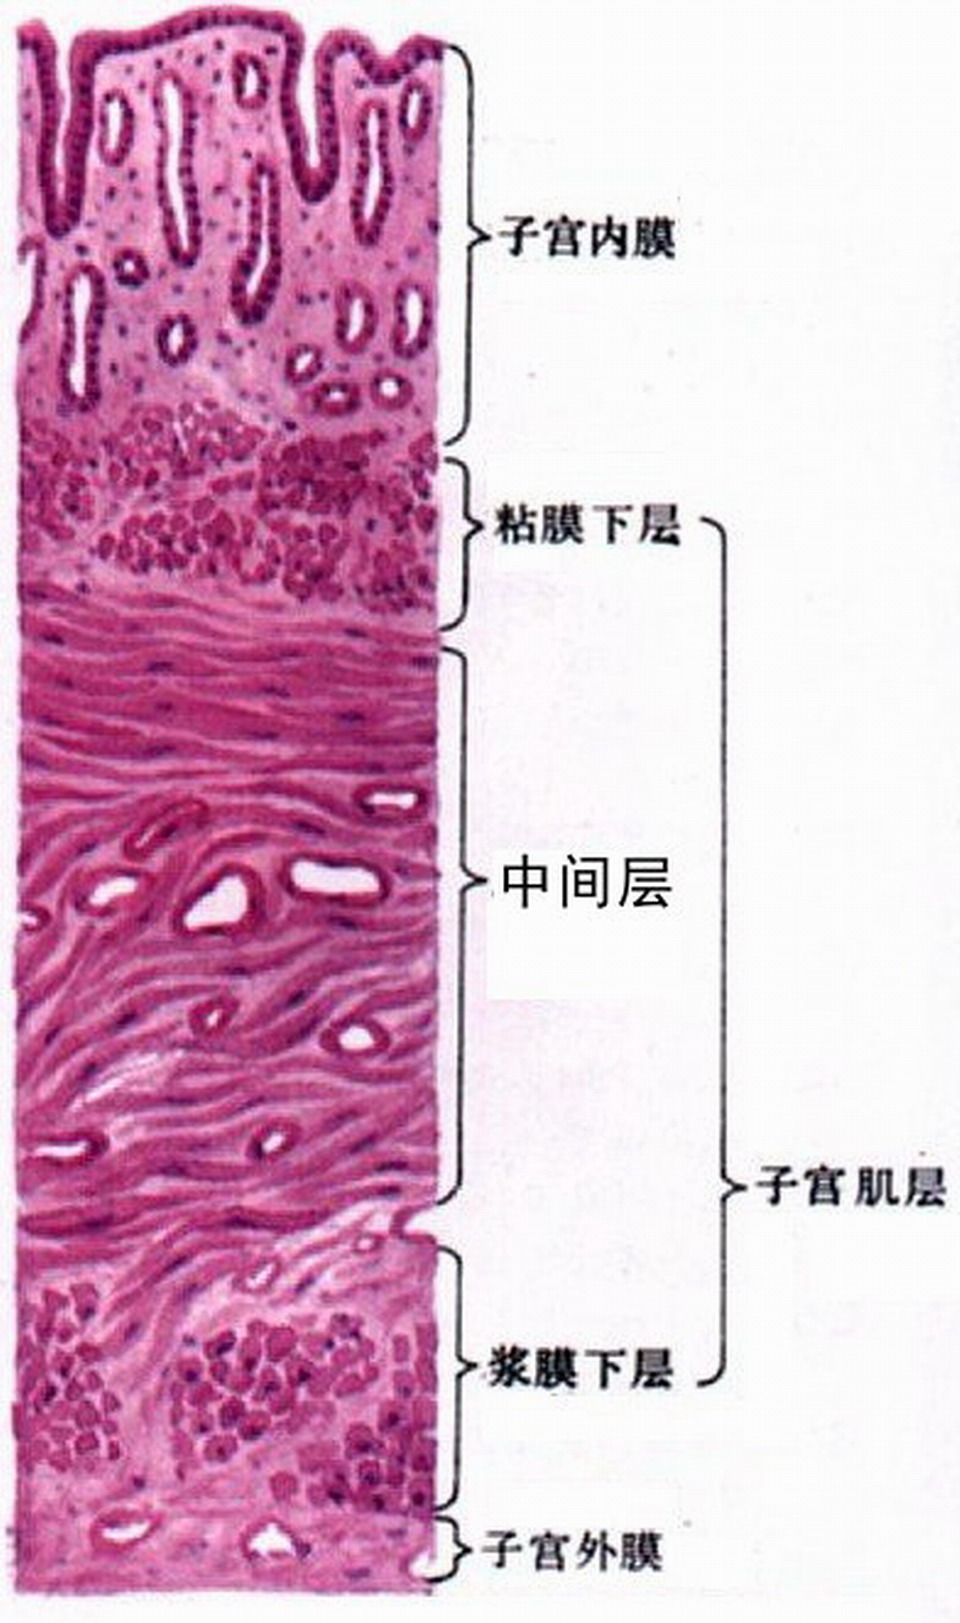 子宫壁结构图片